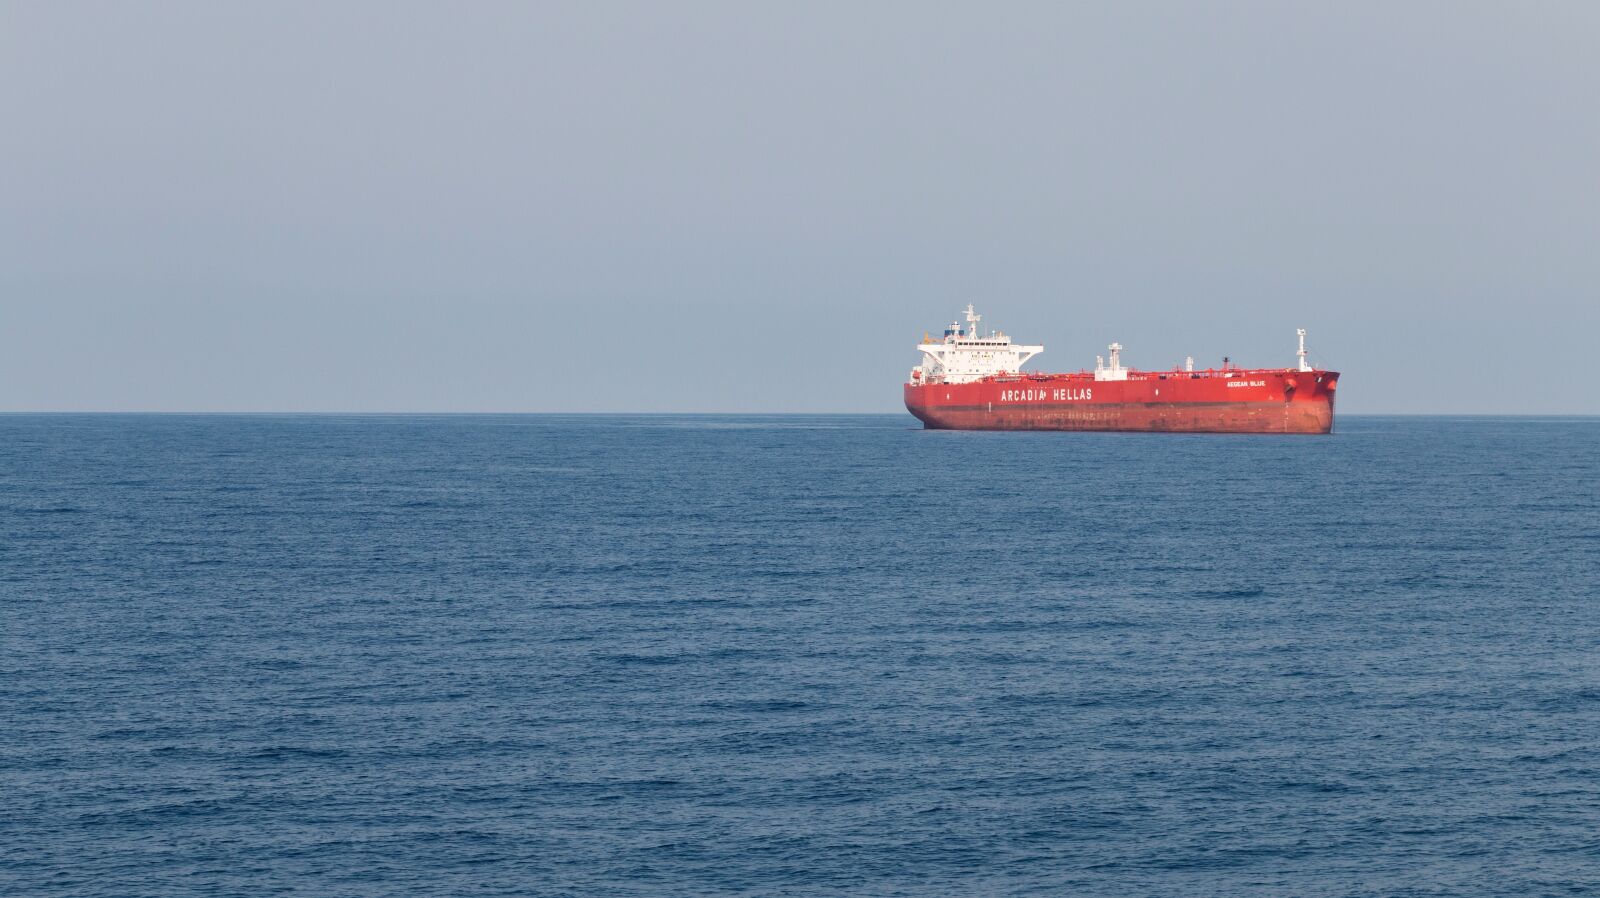 Canon EOS 70D sample photo. Ship, sea, ocean photography